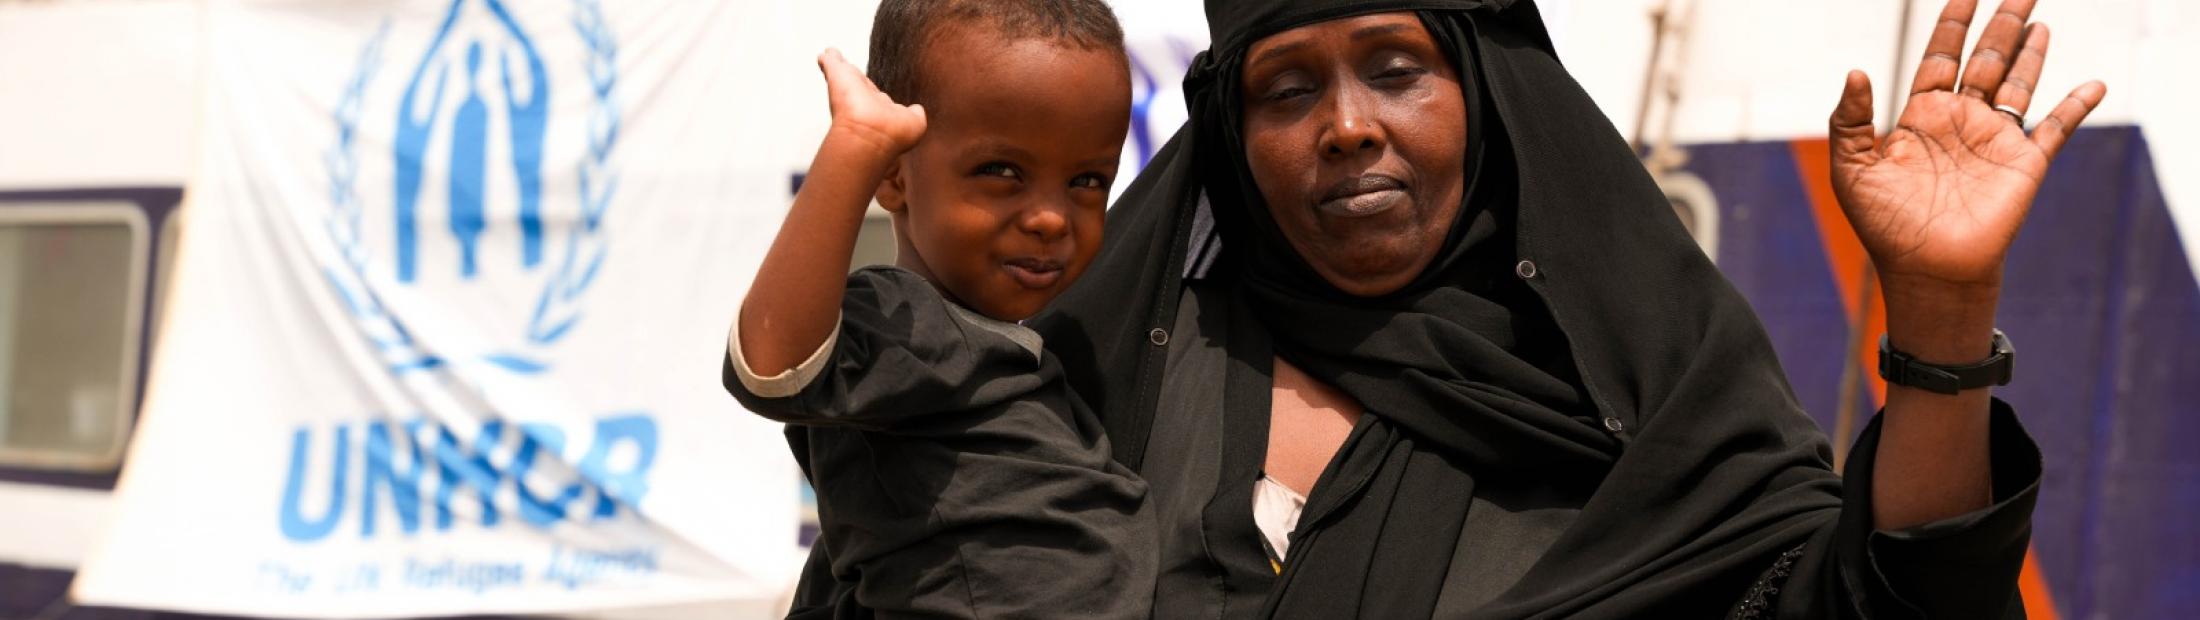 Yemen: el país olvidado que sigue necesitando ayuda